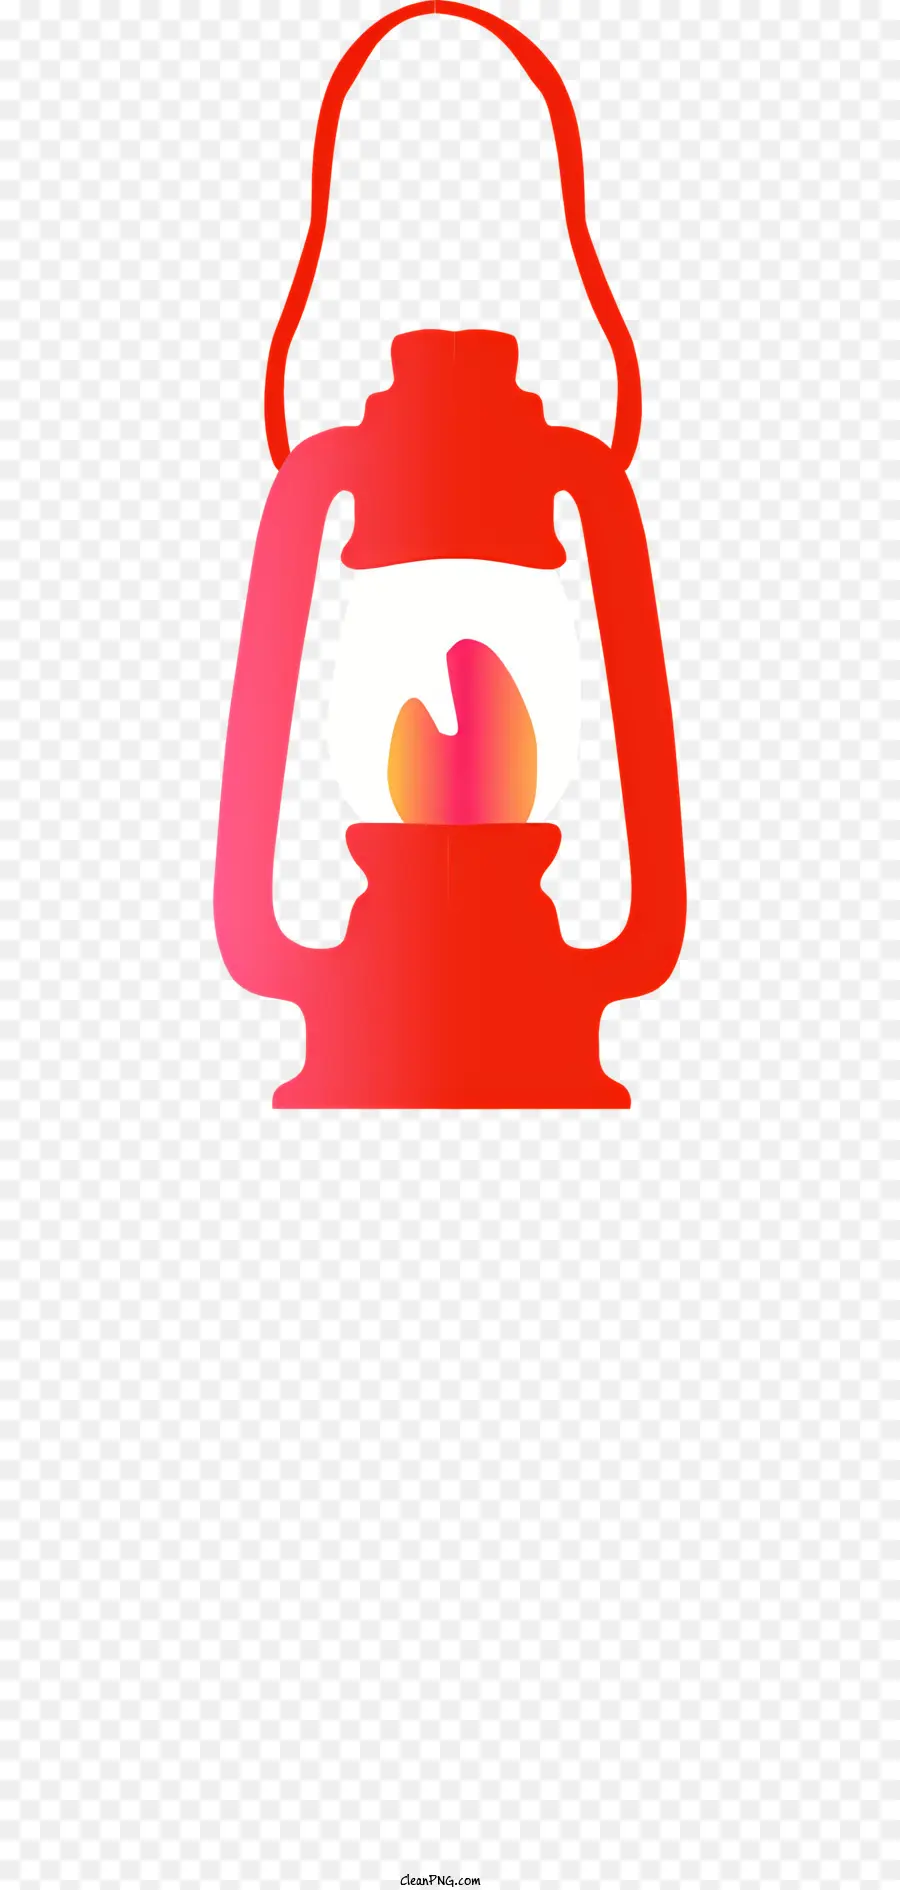 Rote Laternflamme Laterne Metall Lantern Round Lantern kleine Flamme - Zusammenfassung: Rotmetalllaterne mit einer kleinen orange Flamme